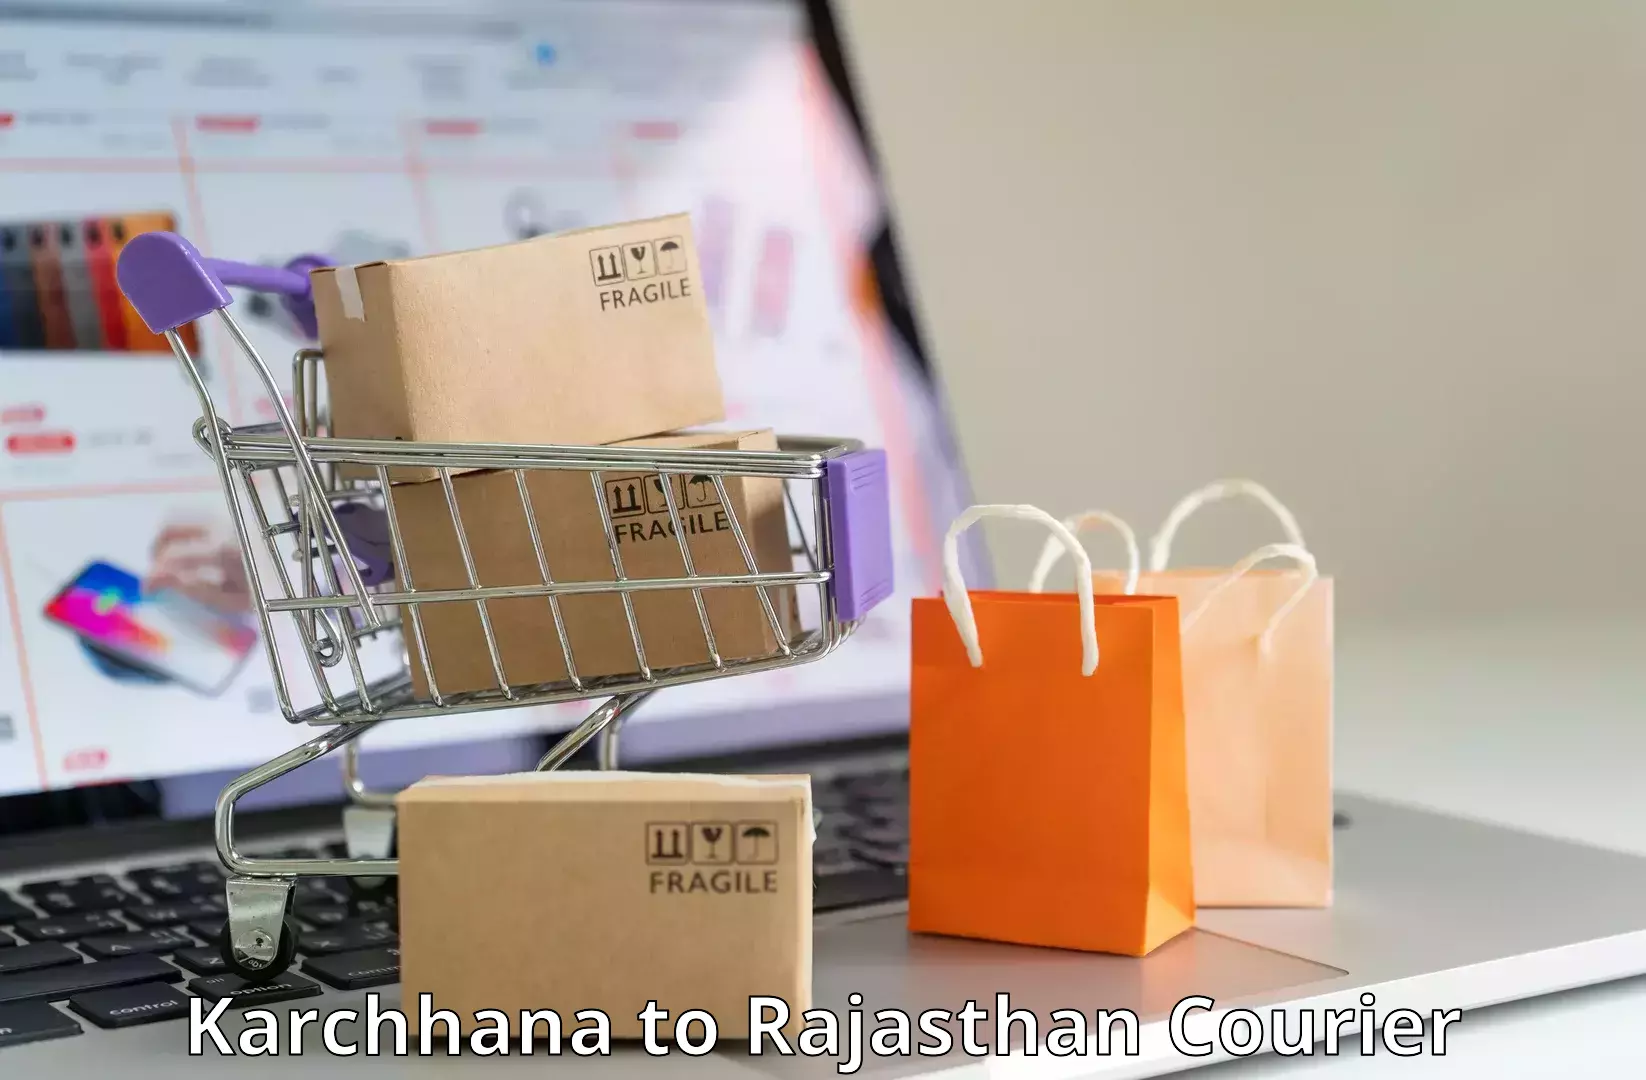 24-hour courier service Karchhana to Nimbahera